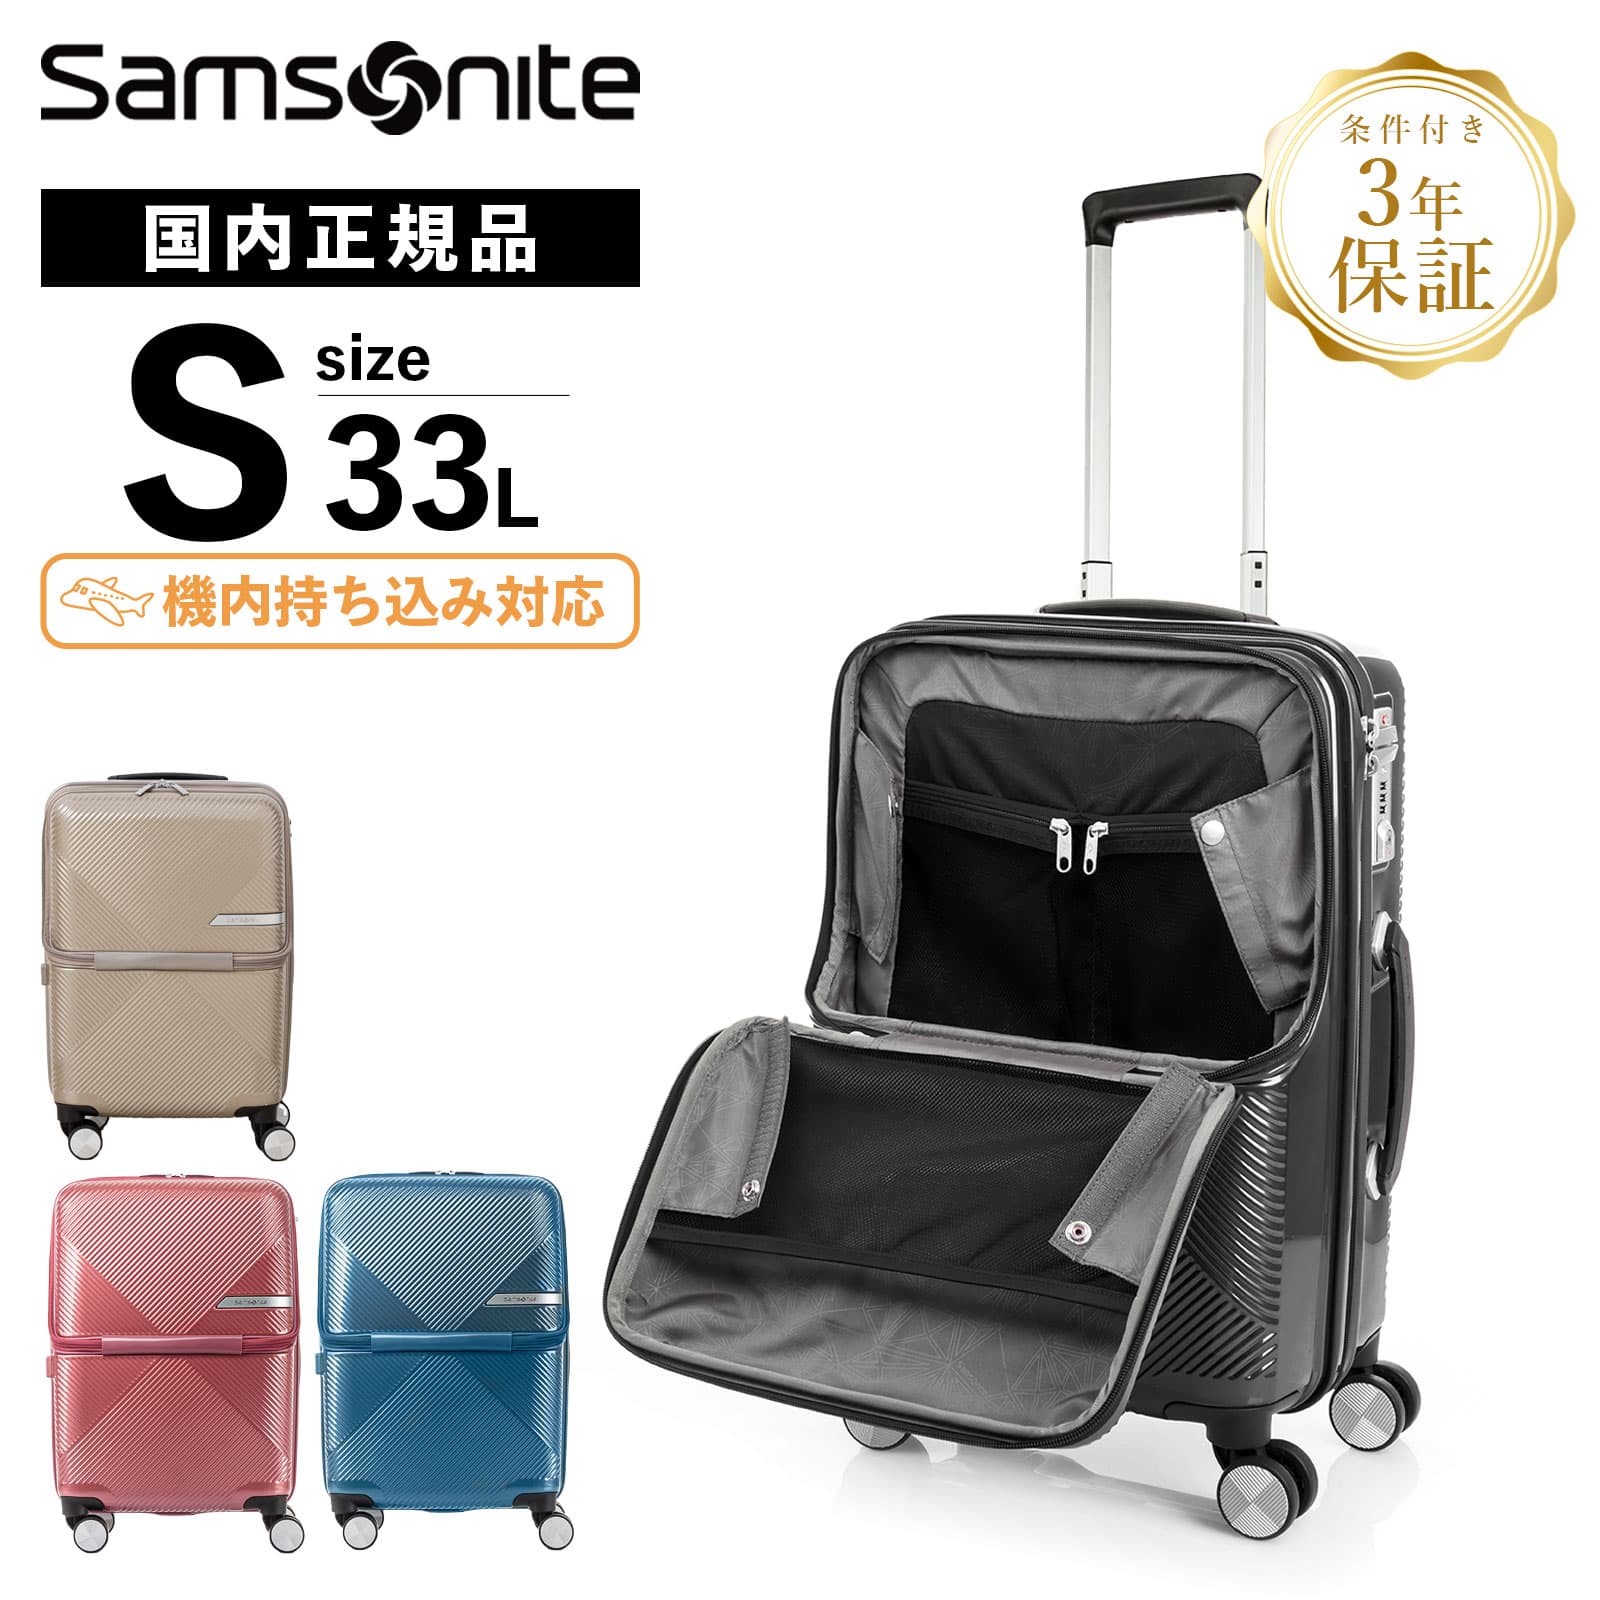 samsonite サムソナイト キャリーケーススーツケース機内持ち込み可能